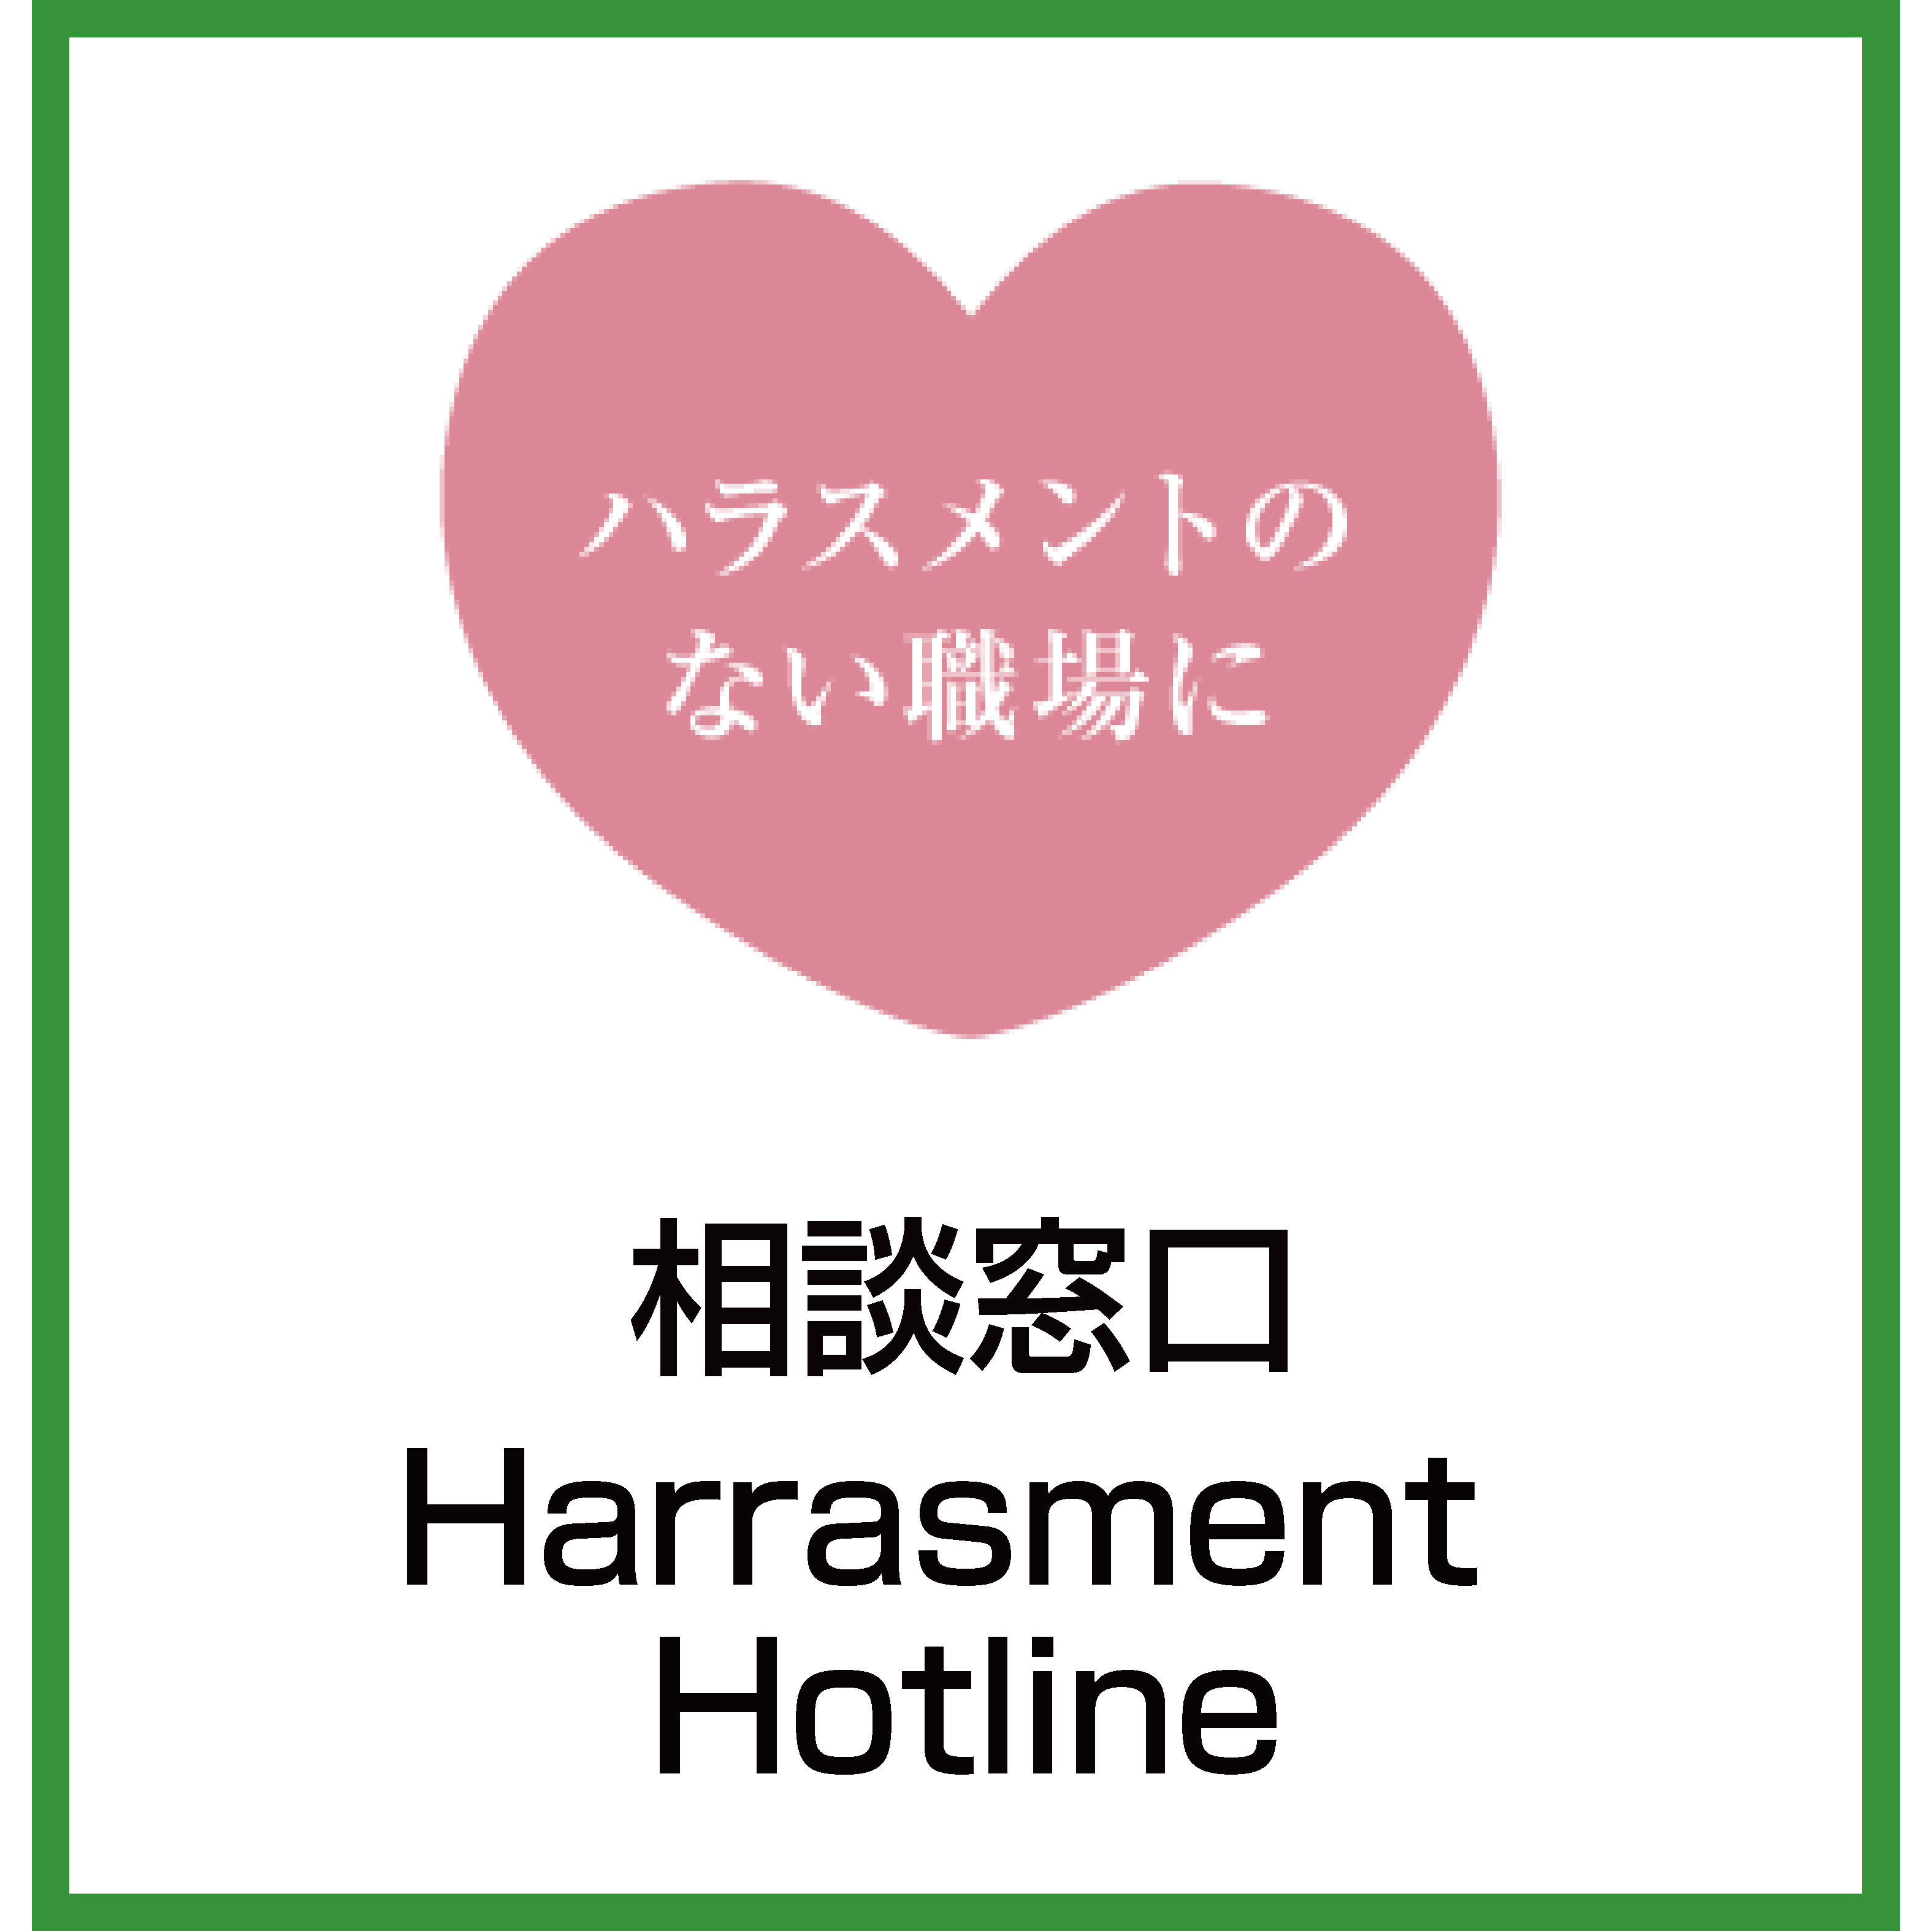 人権啓発室ロゴ